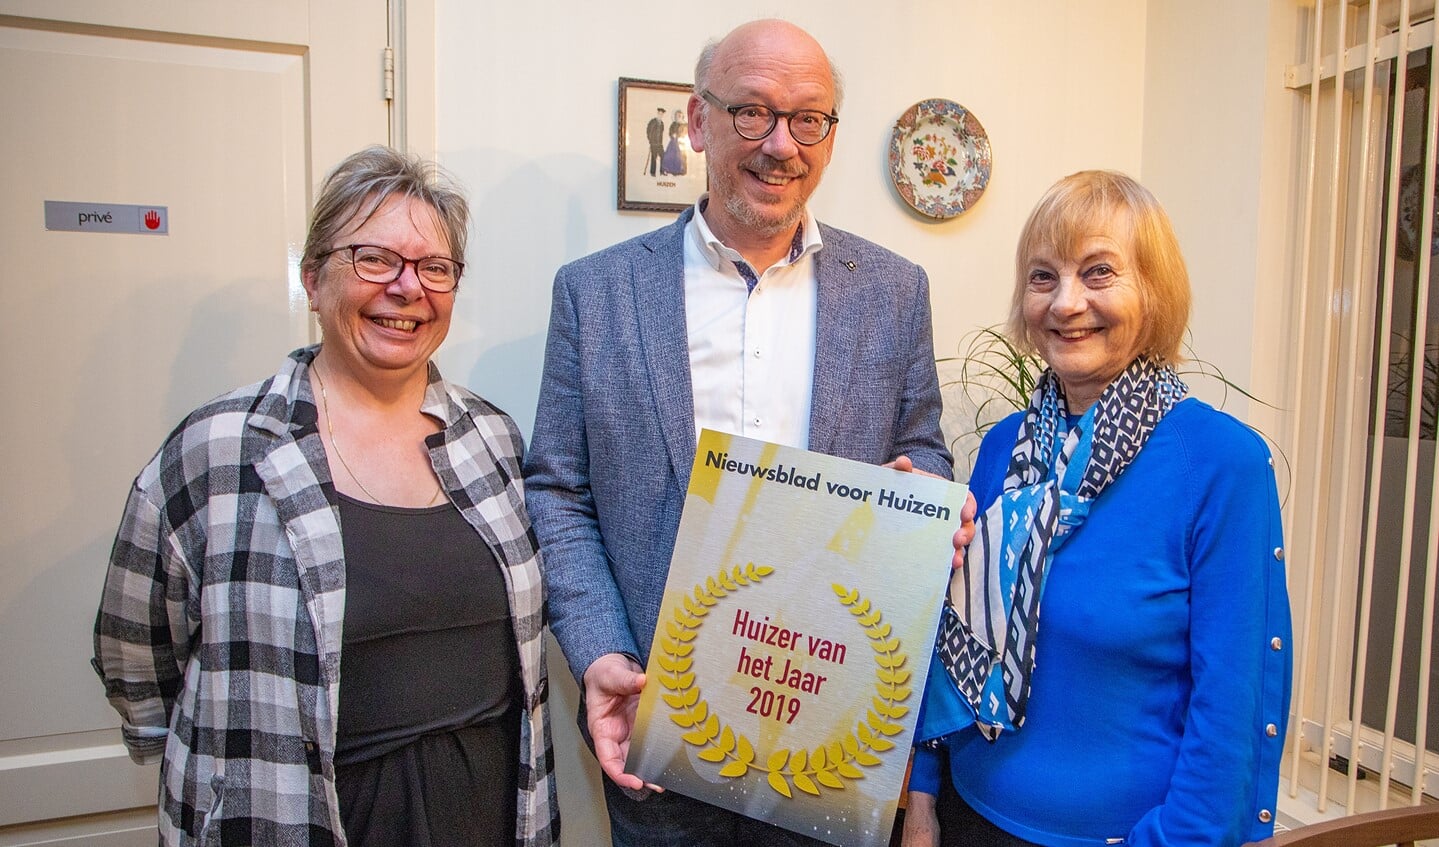 Loekie Wiegerinck, Kees de Kok en Ineke van Herwegen met de award Huizer van het Jaar 2019.